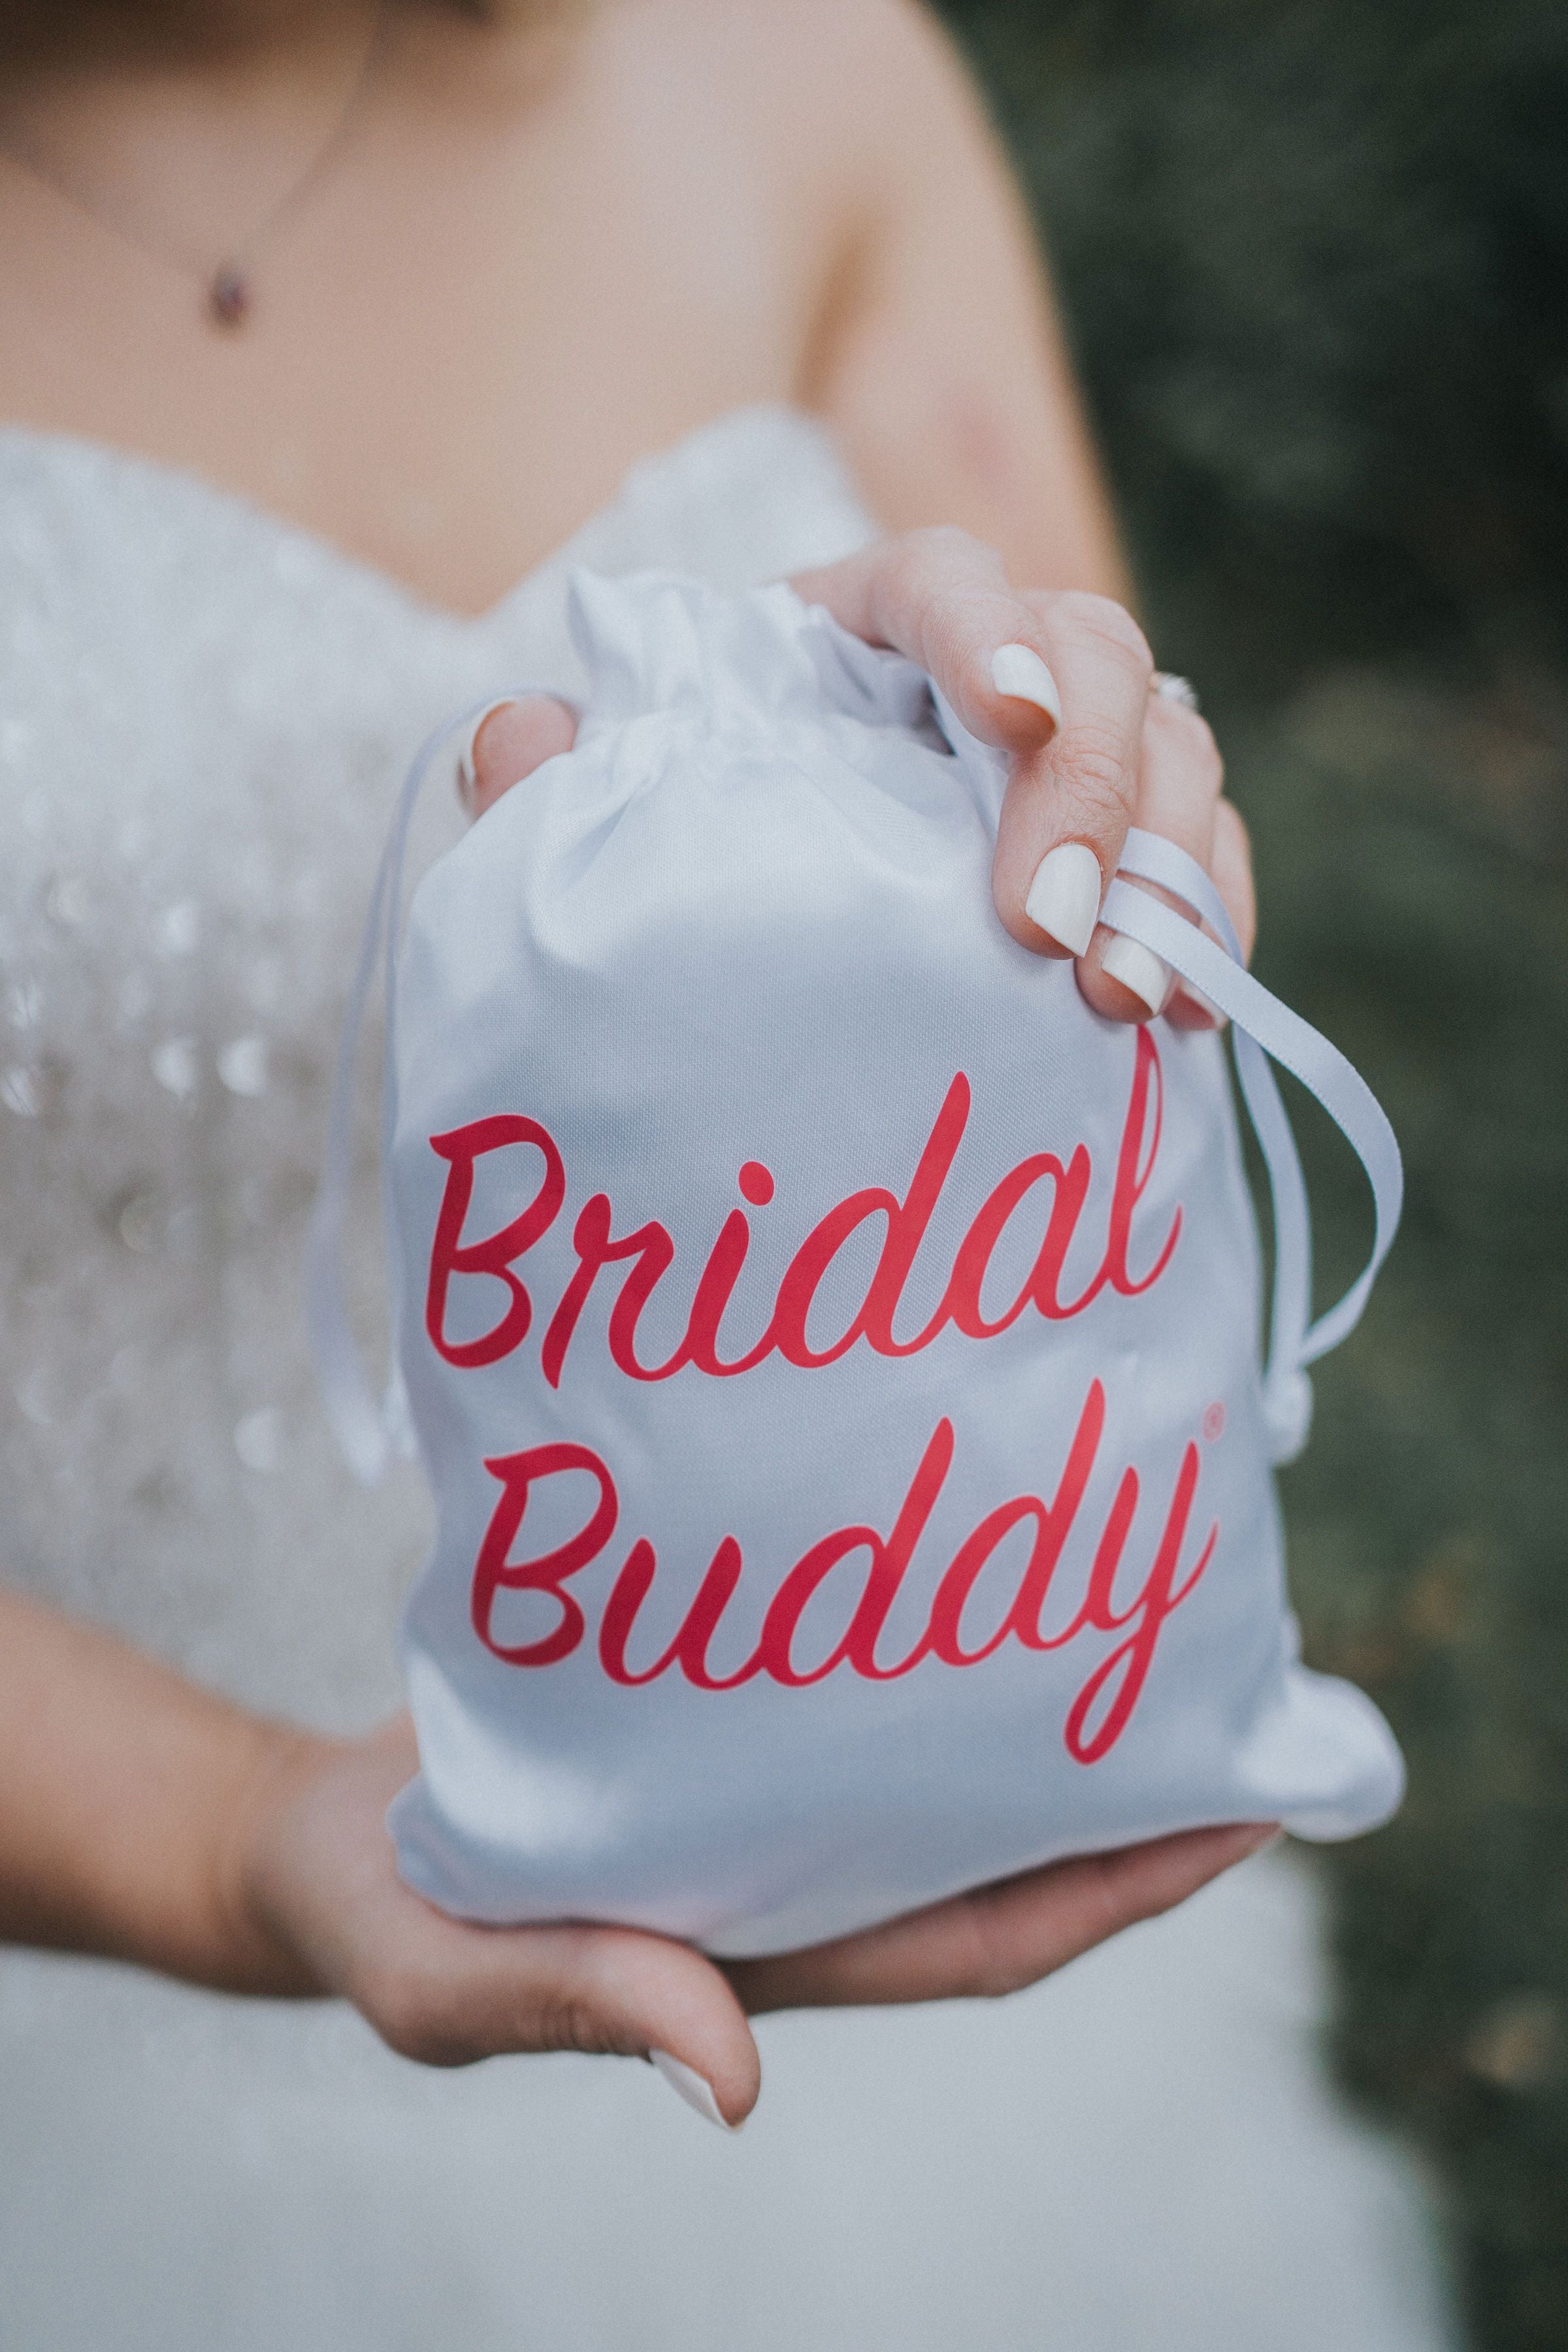 Buddy – Perla Bridal